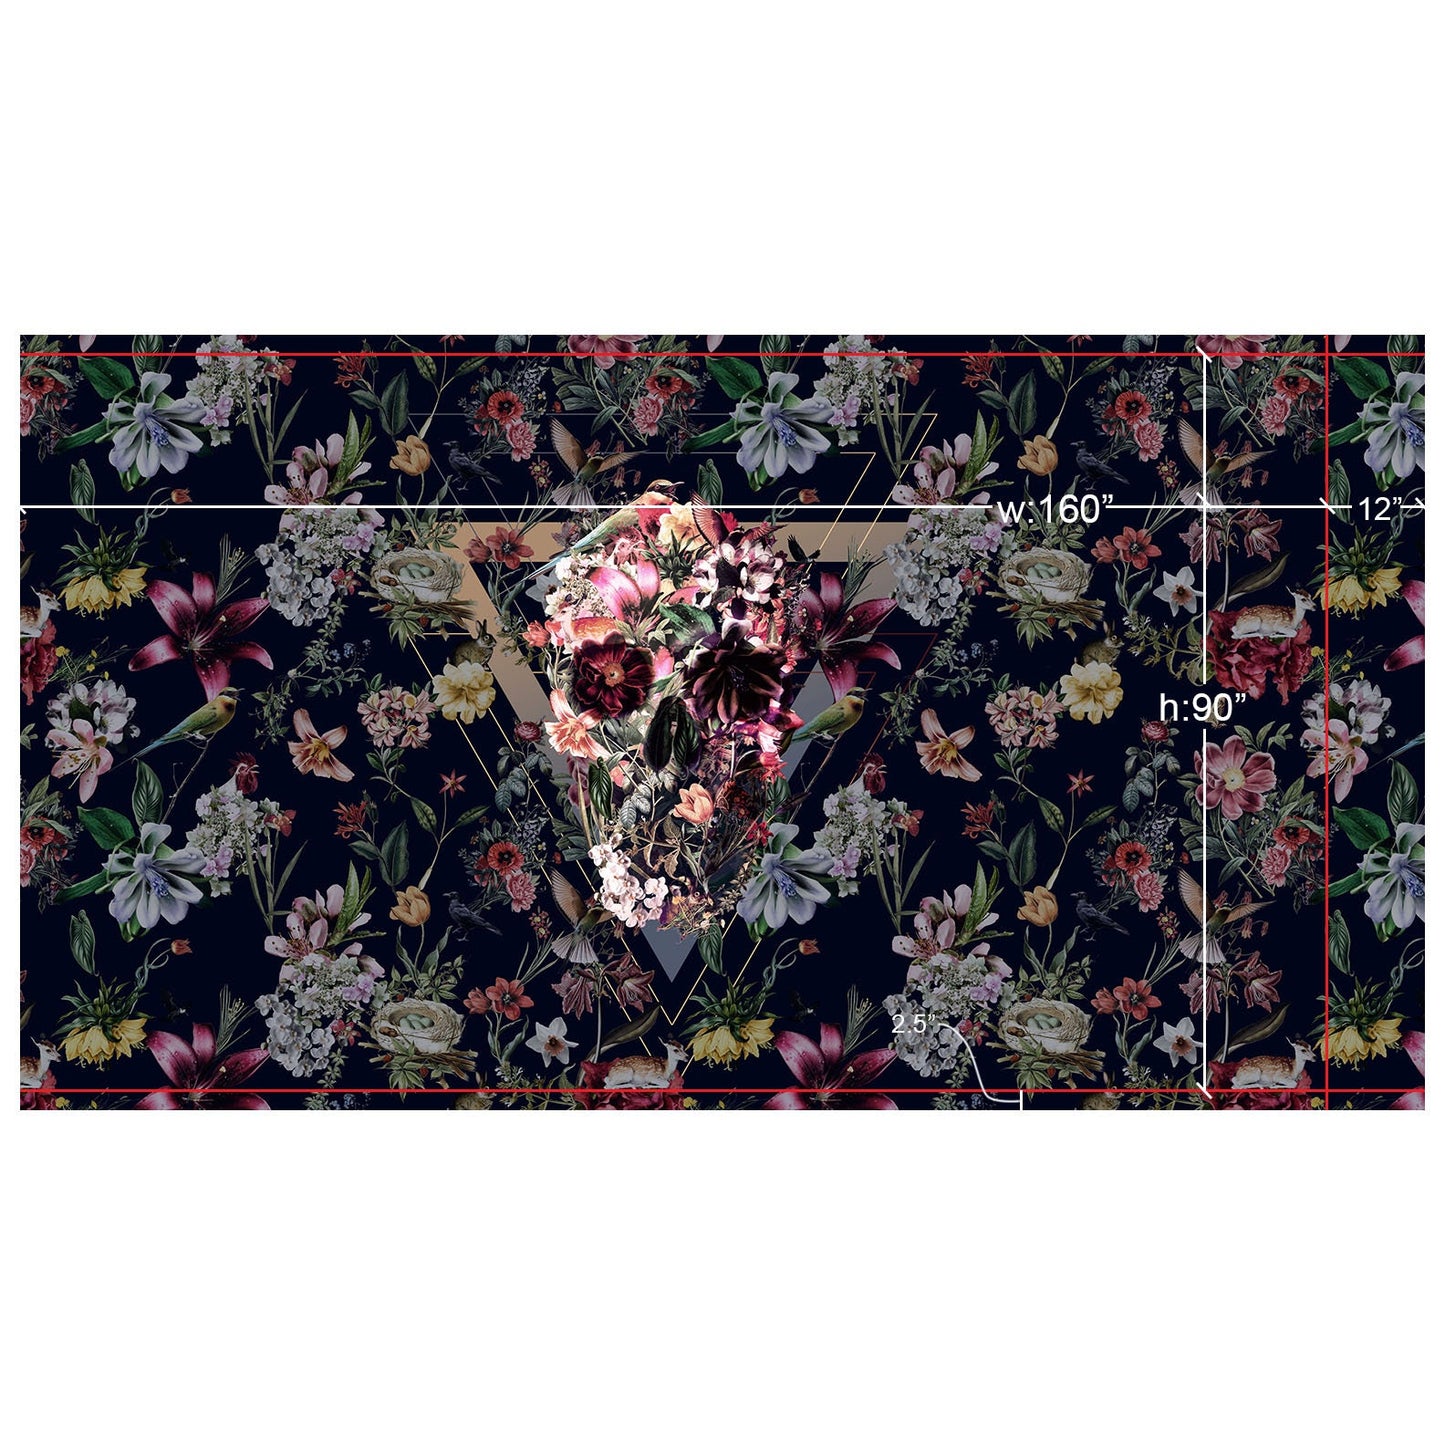 Dark Wallpaper Flower Skull Home Decor, Custom Size Floral Skull Art Print Traditional Wallpaper, High Quality Sugar Skull Wallpaper Decor